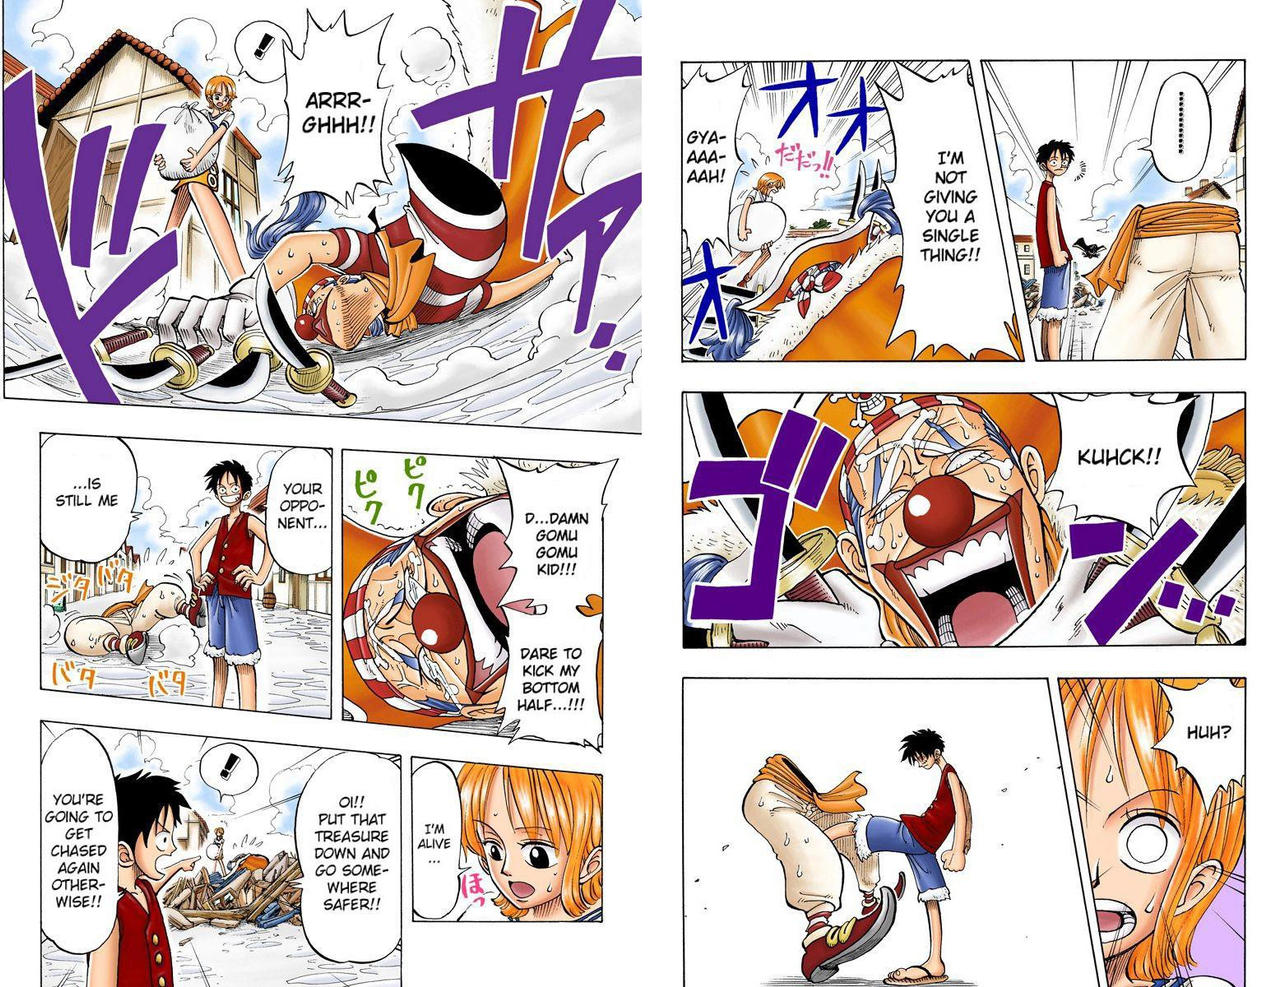 Estilo Mangá] Luffy Vs Enel (Parte 1) - One Piece 